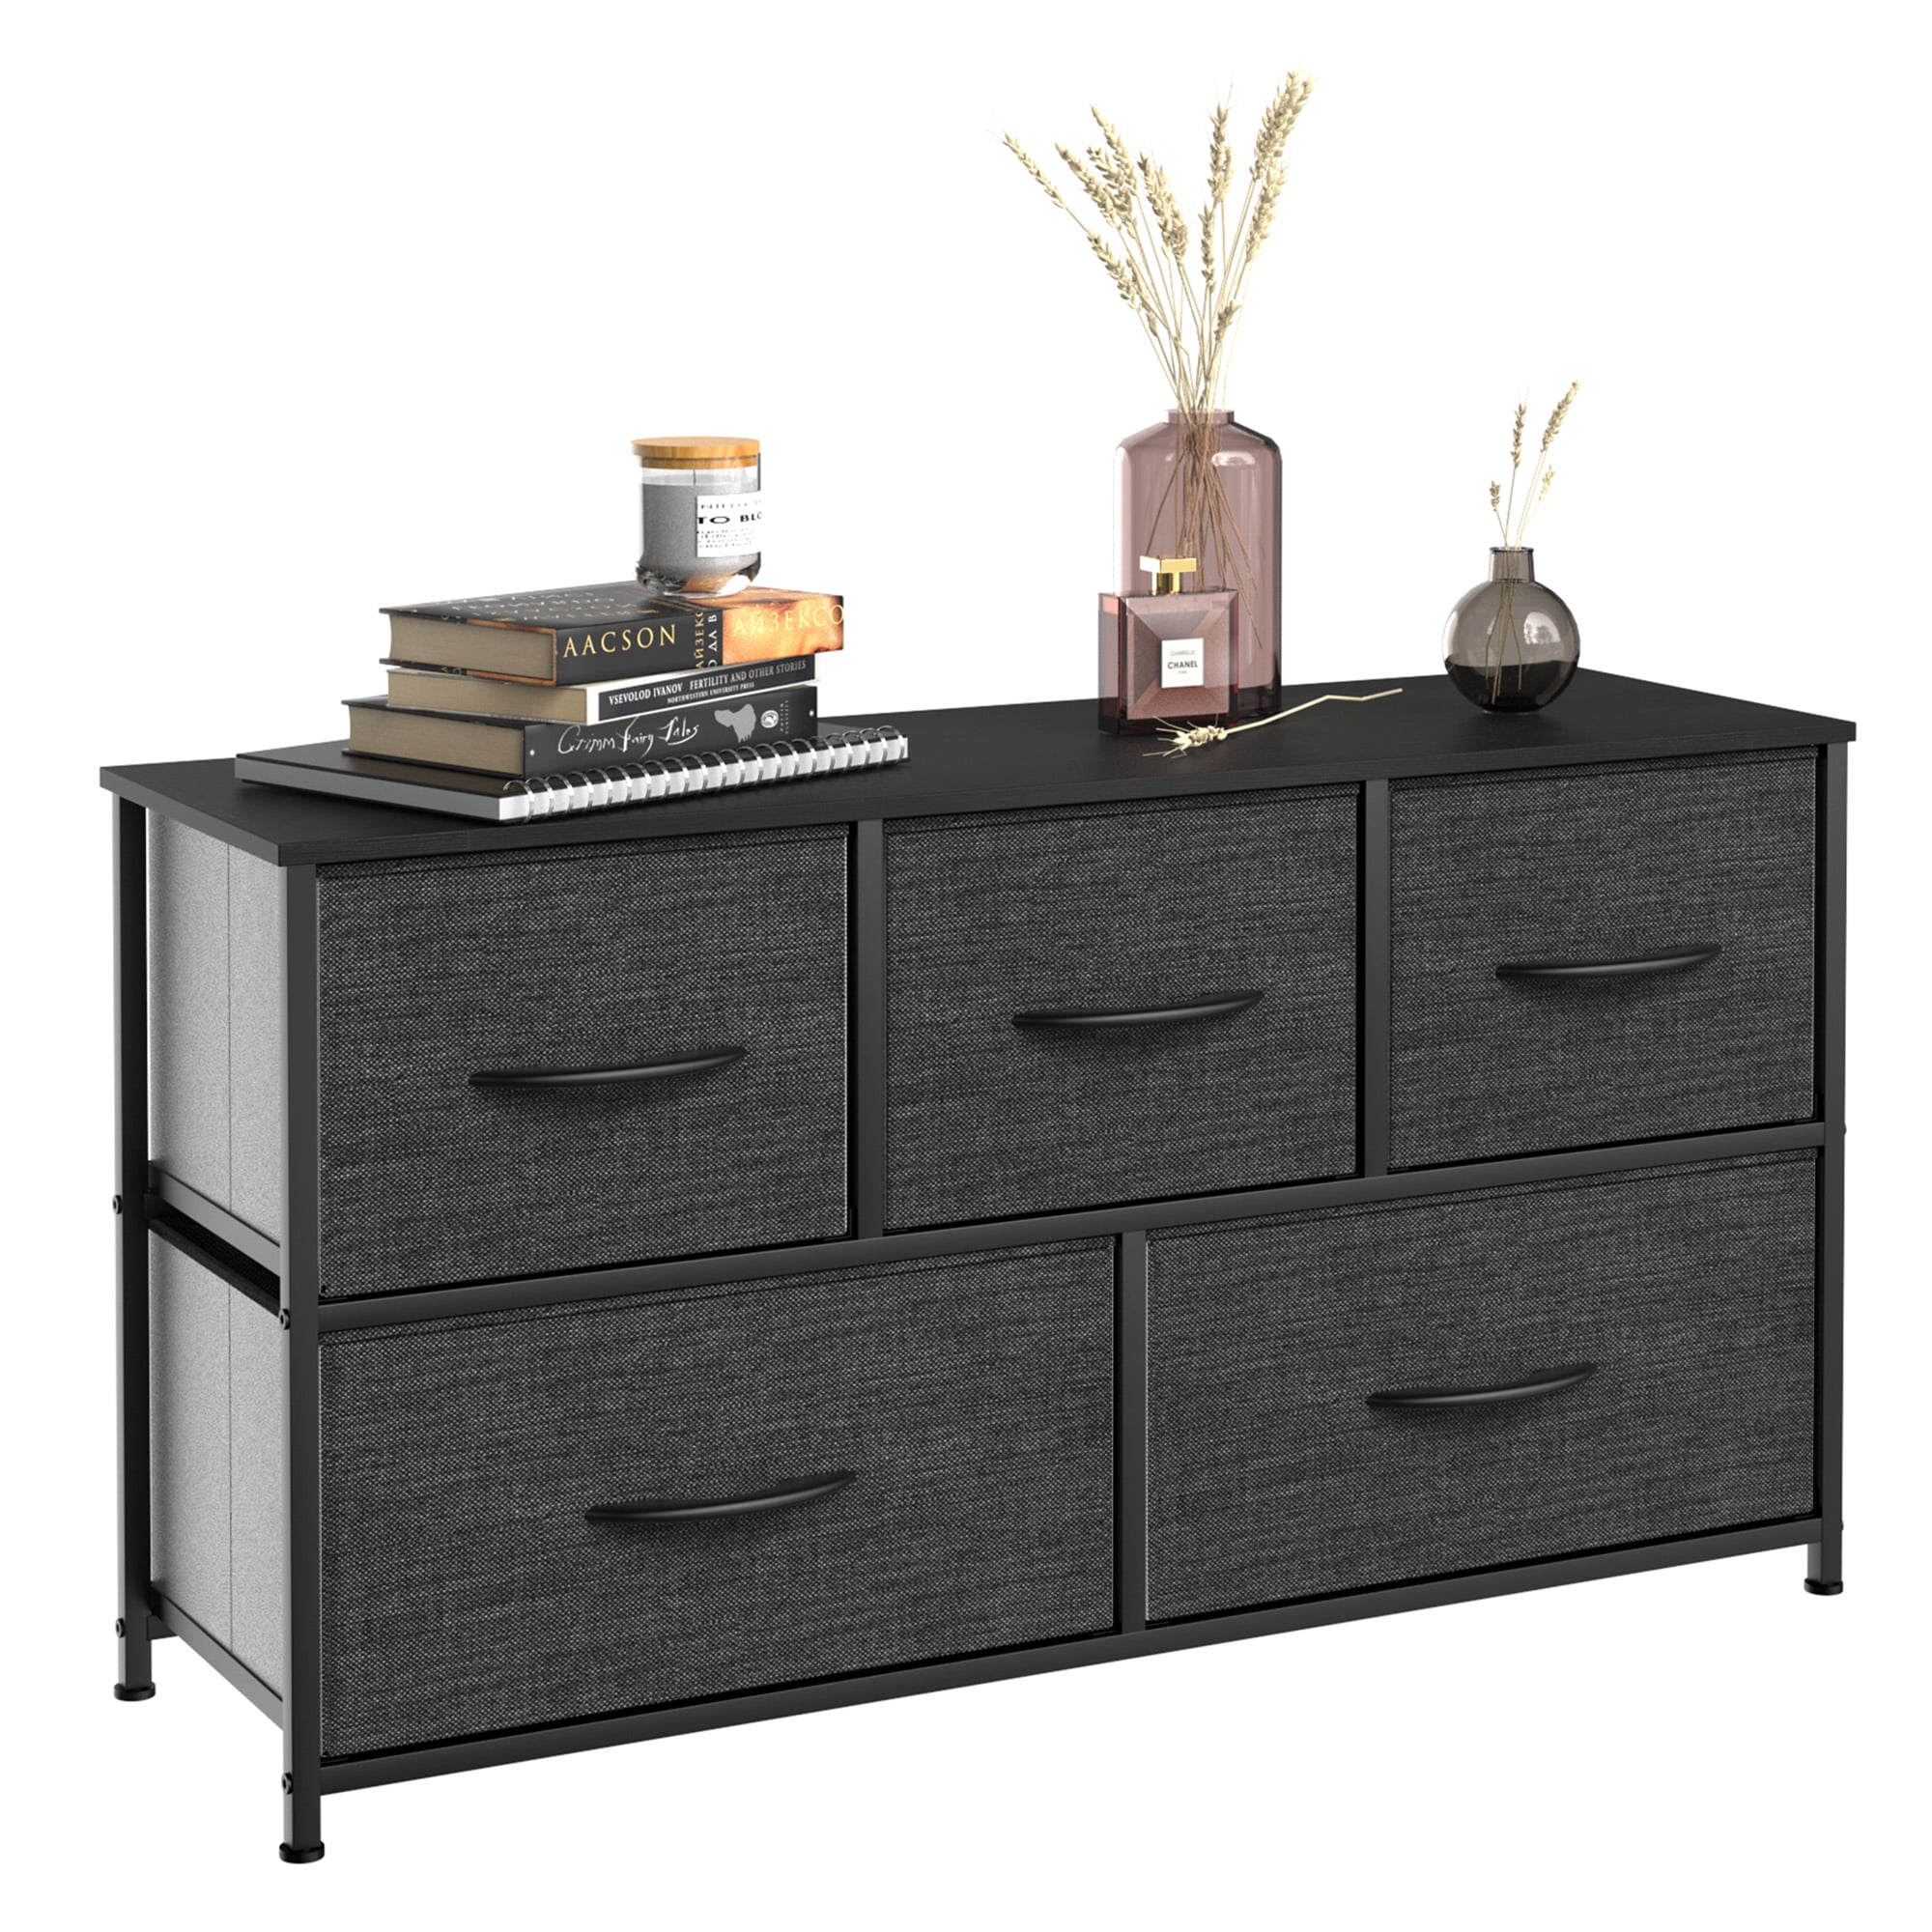 Dextrus Wide 5 Drawer Storage Organizer Wooden Top Shelf for Closets, Black Grey